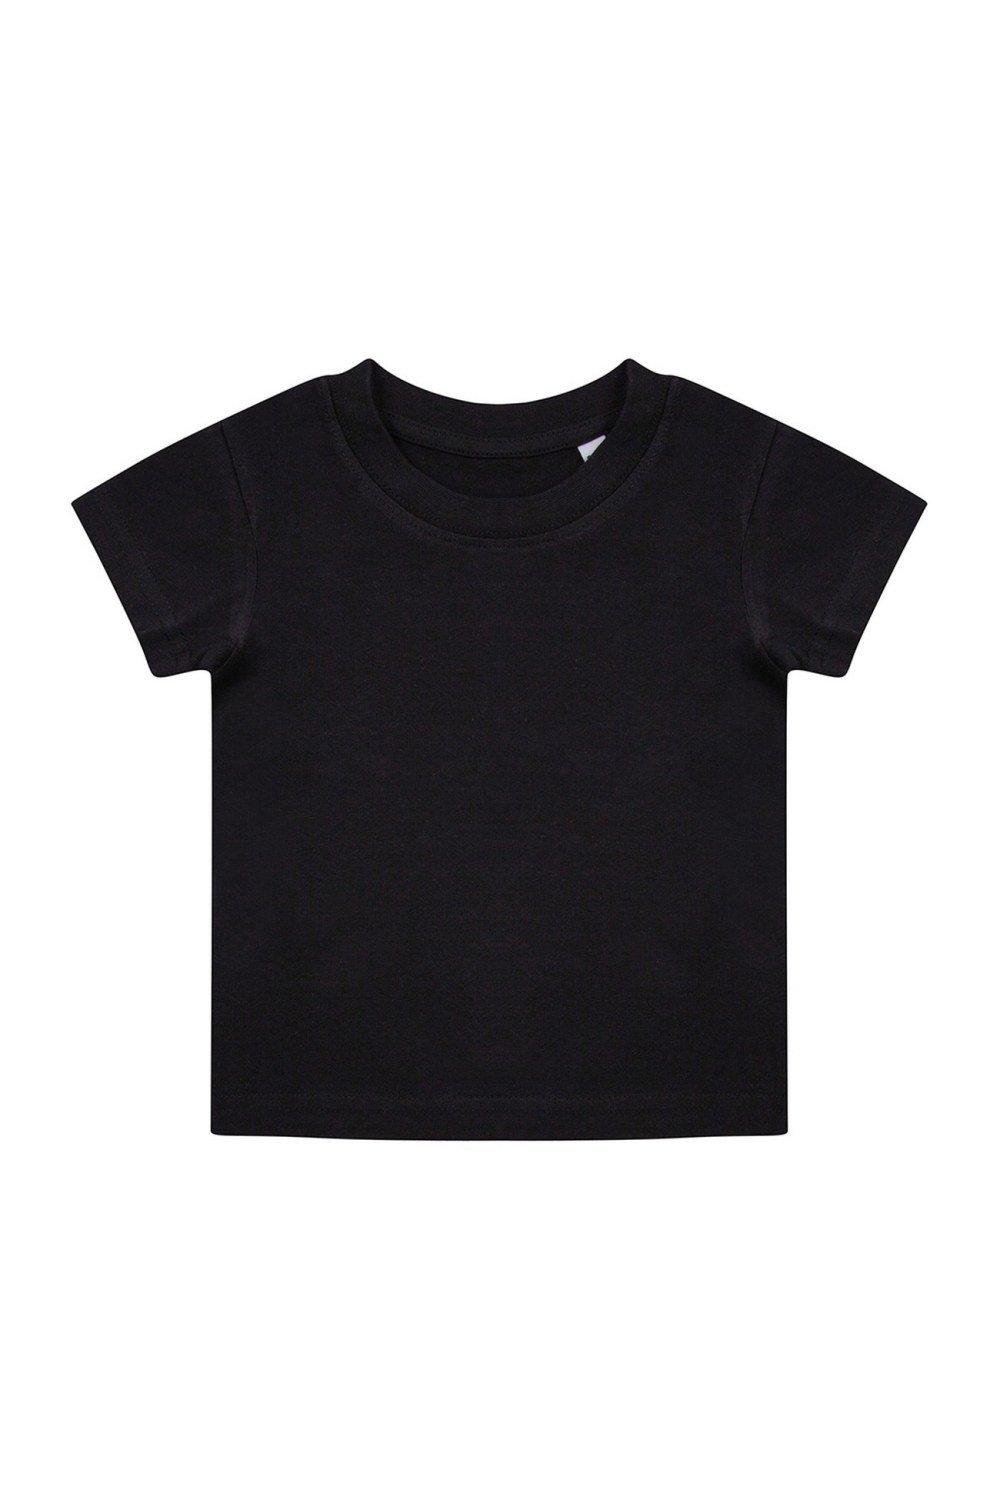 Органическая футболка Larkwood, черный костюм размер 18 24 мес